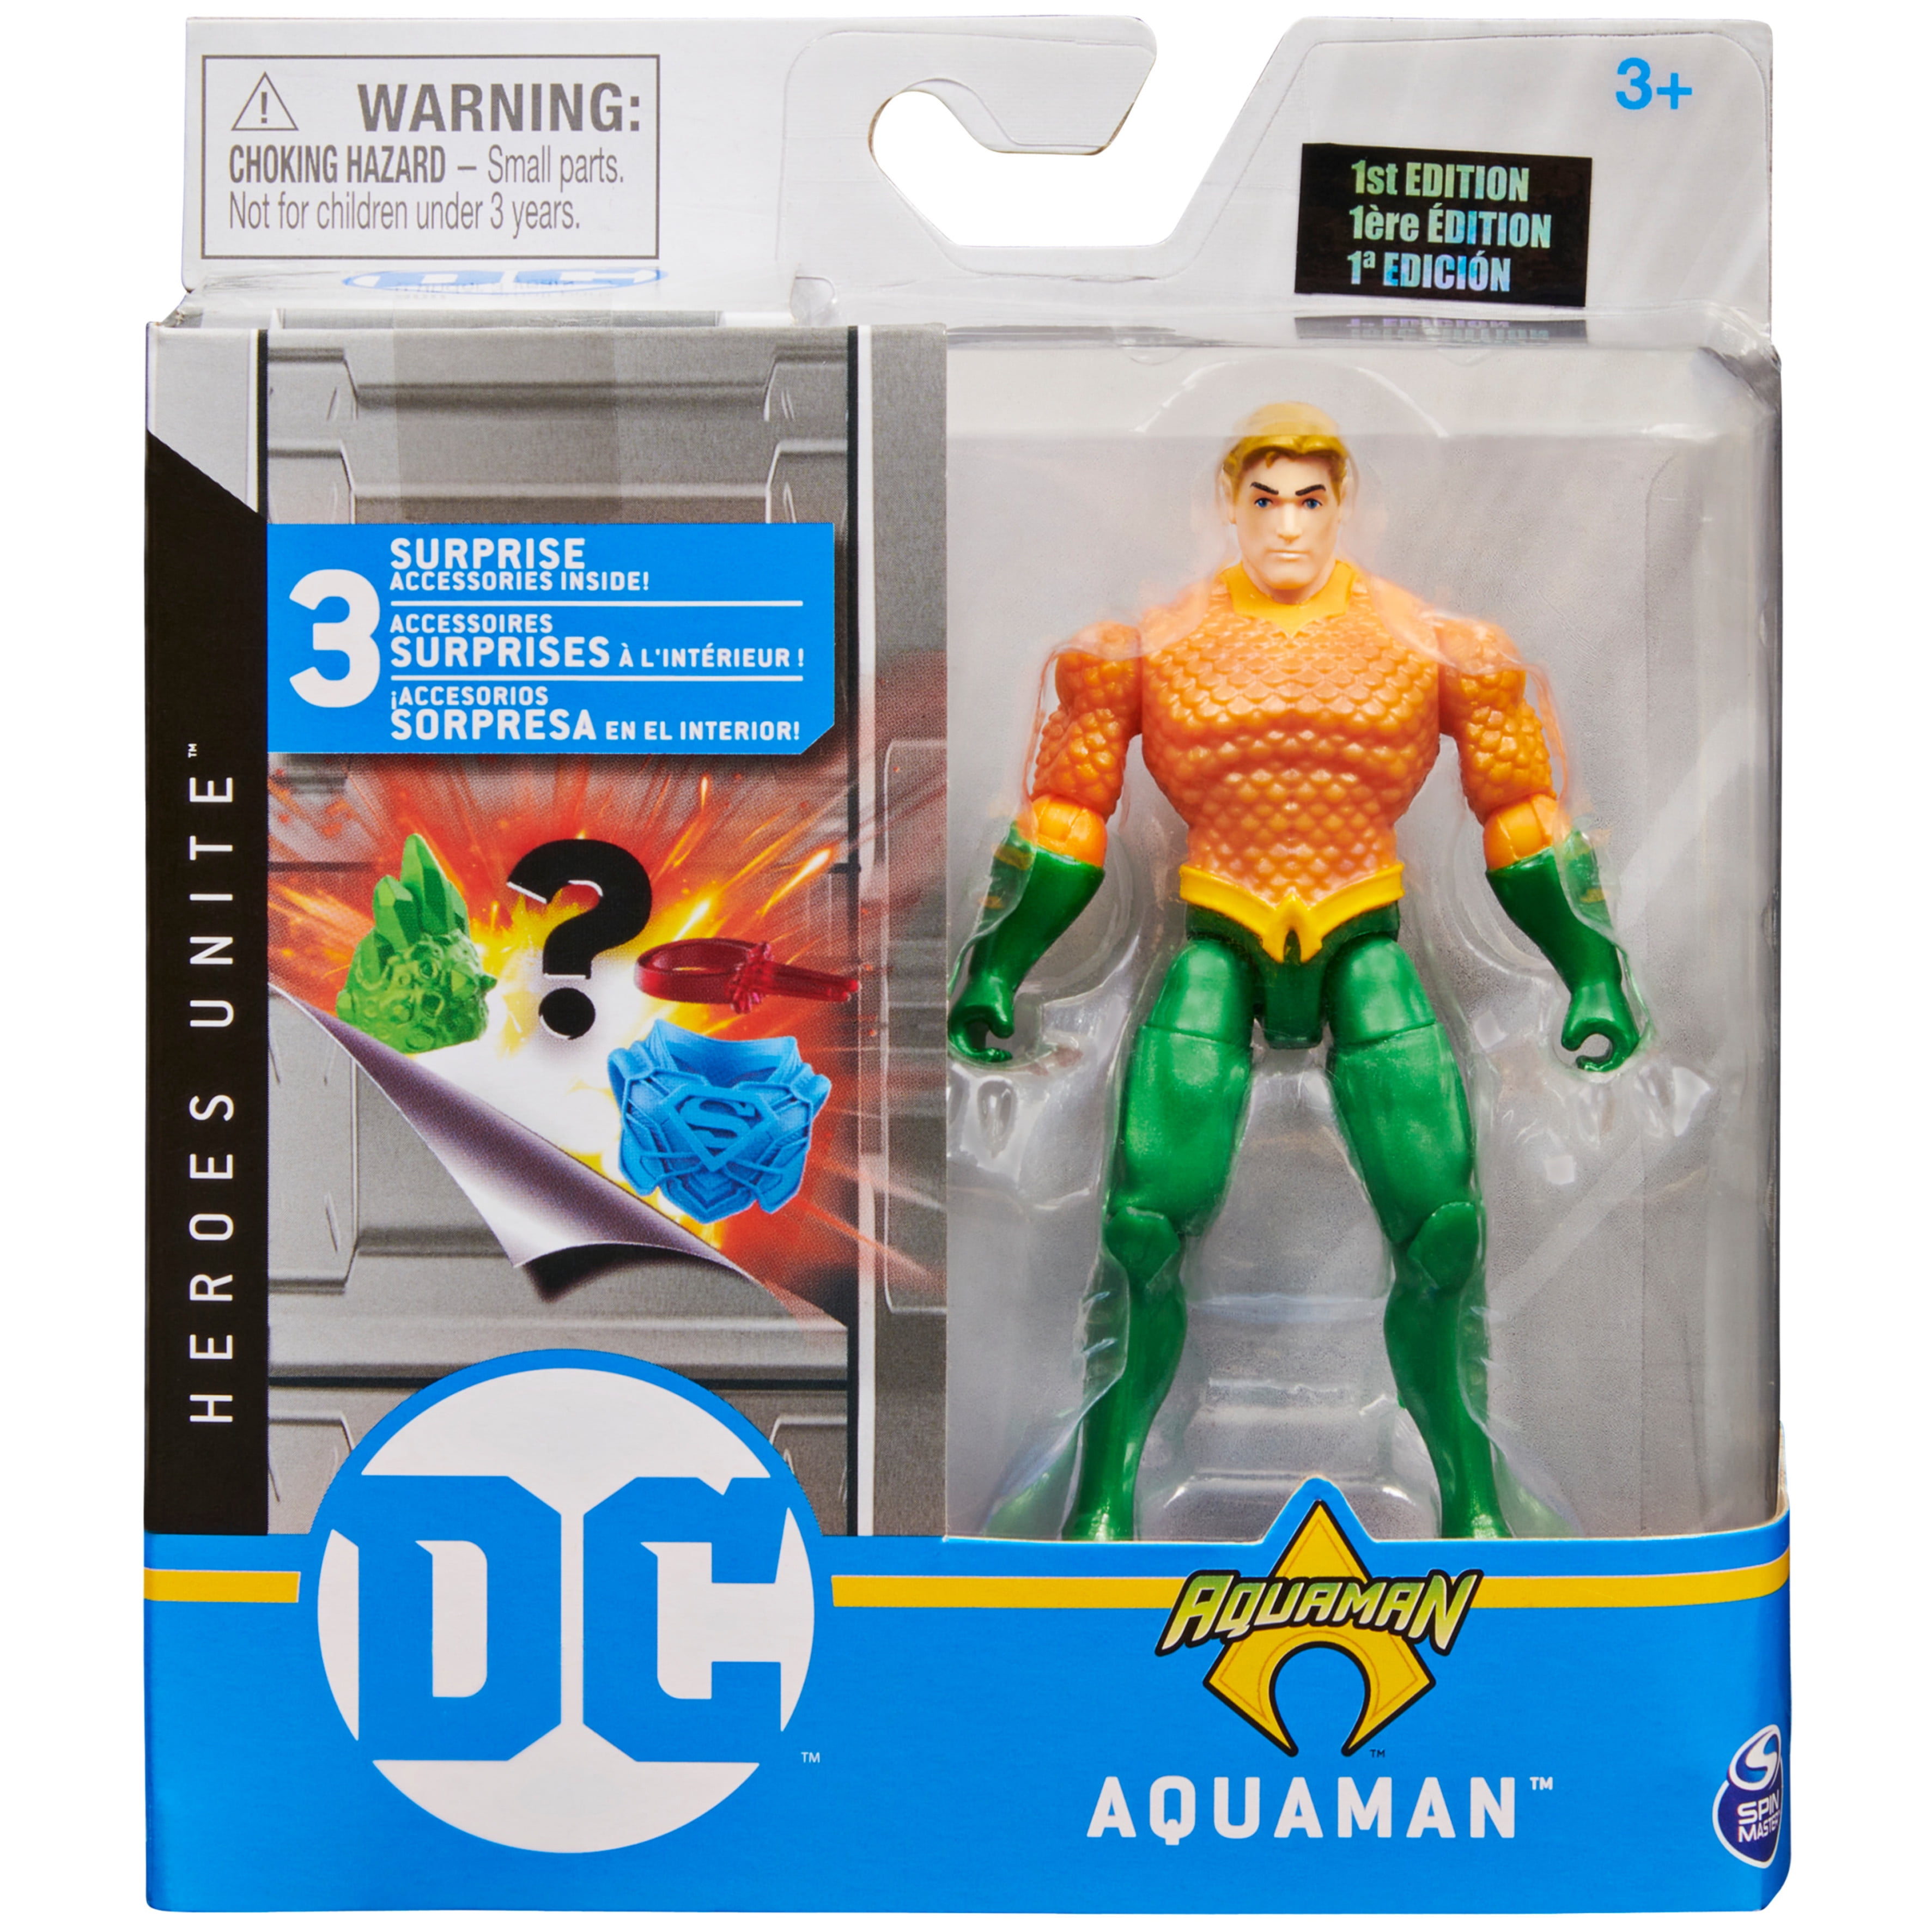 Warner Bros. 'Aquaman' Walmart Floorstand